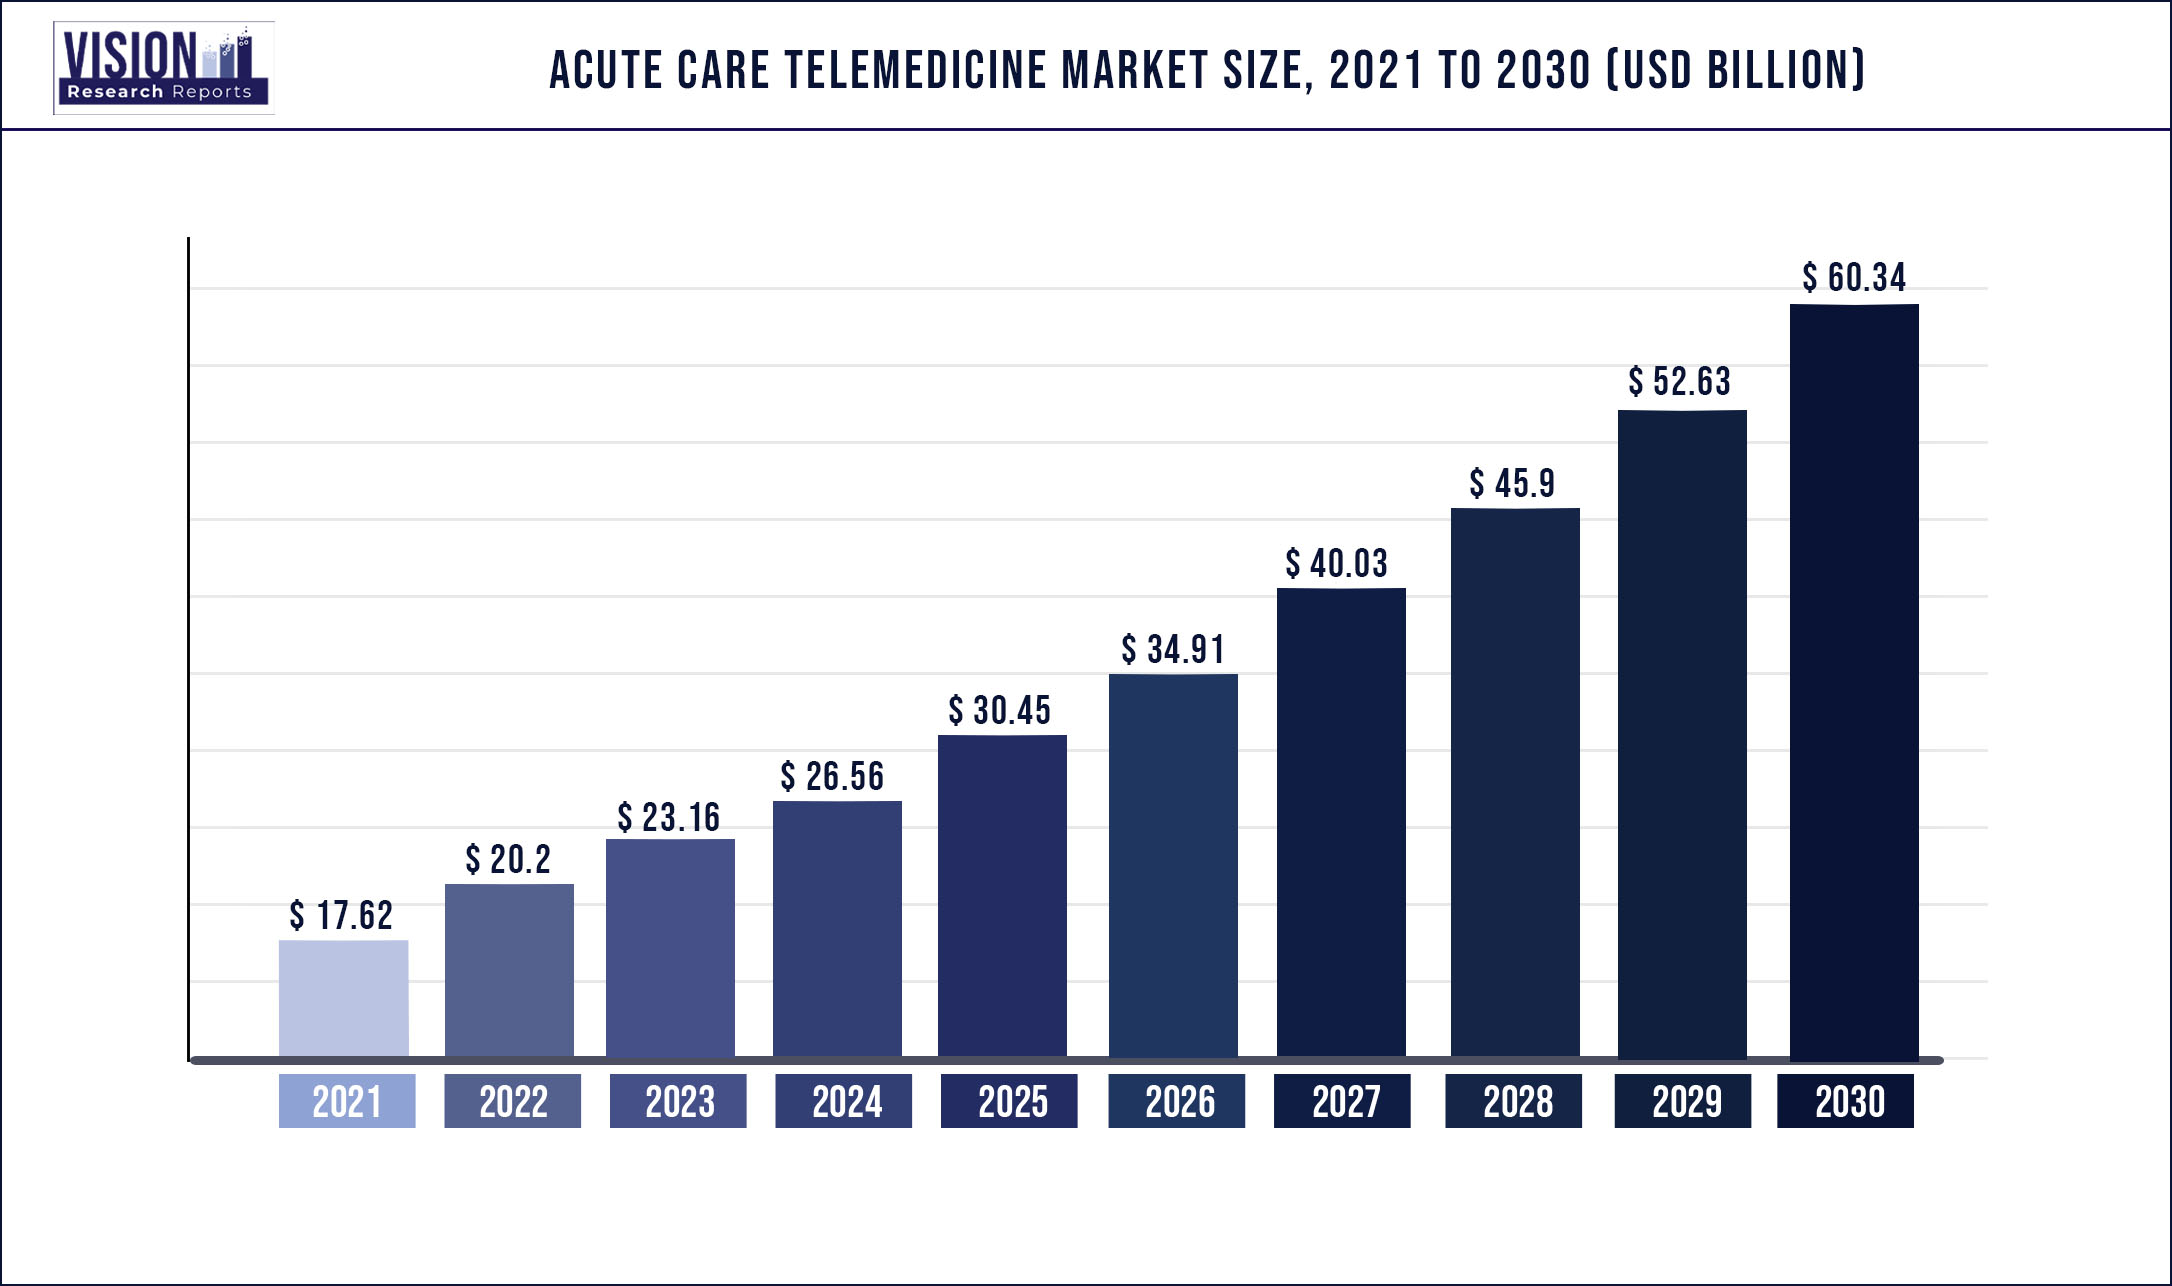 Acute Care Telemedicine Market Size 2021 to 2030